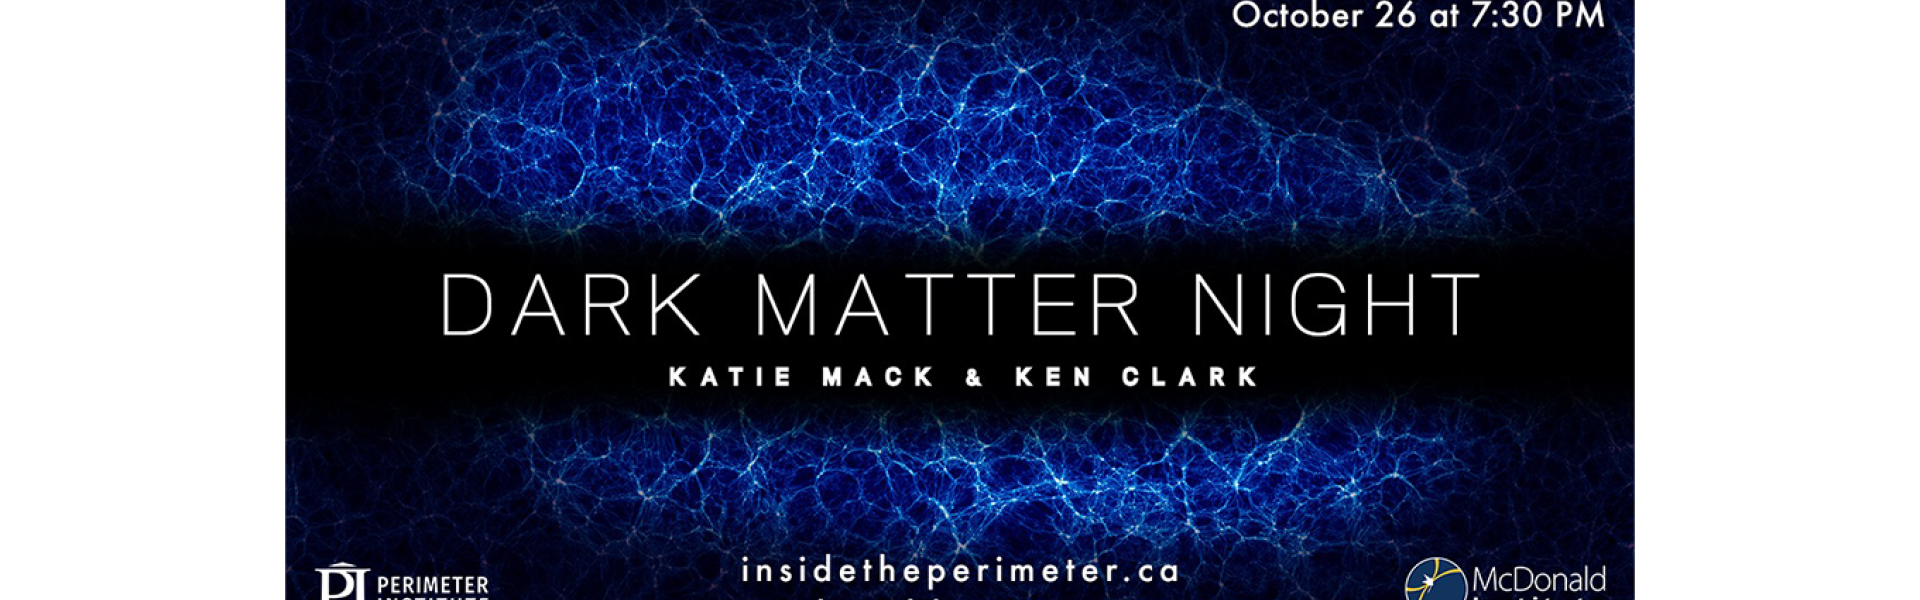 Dark Matter Night